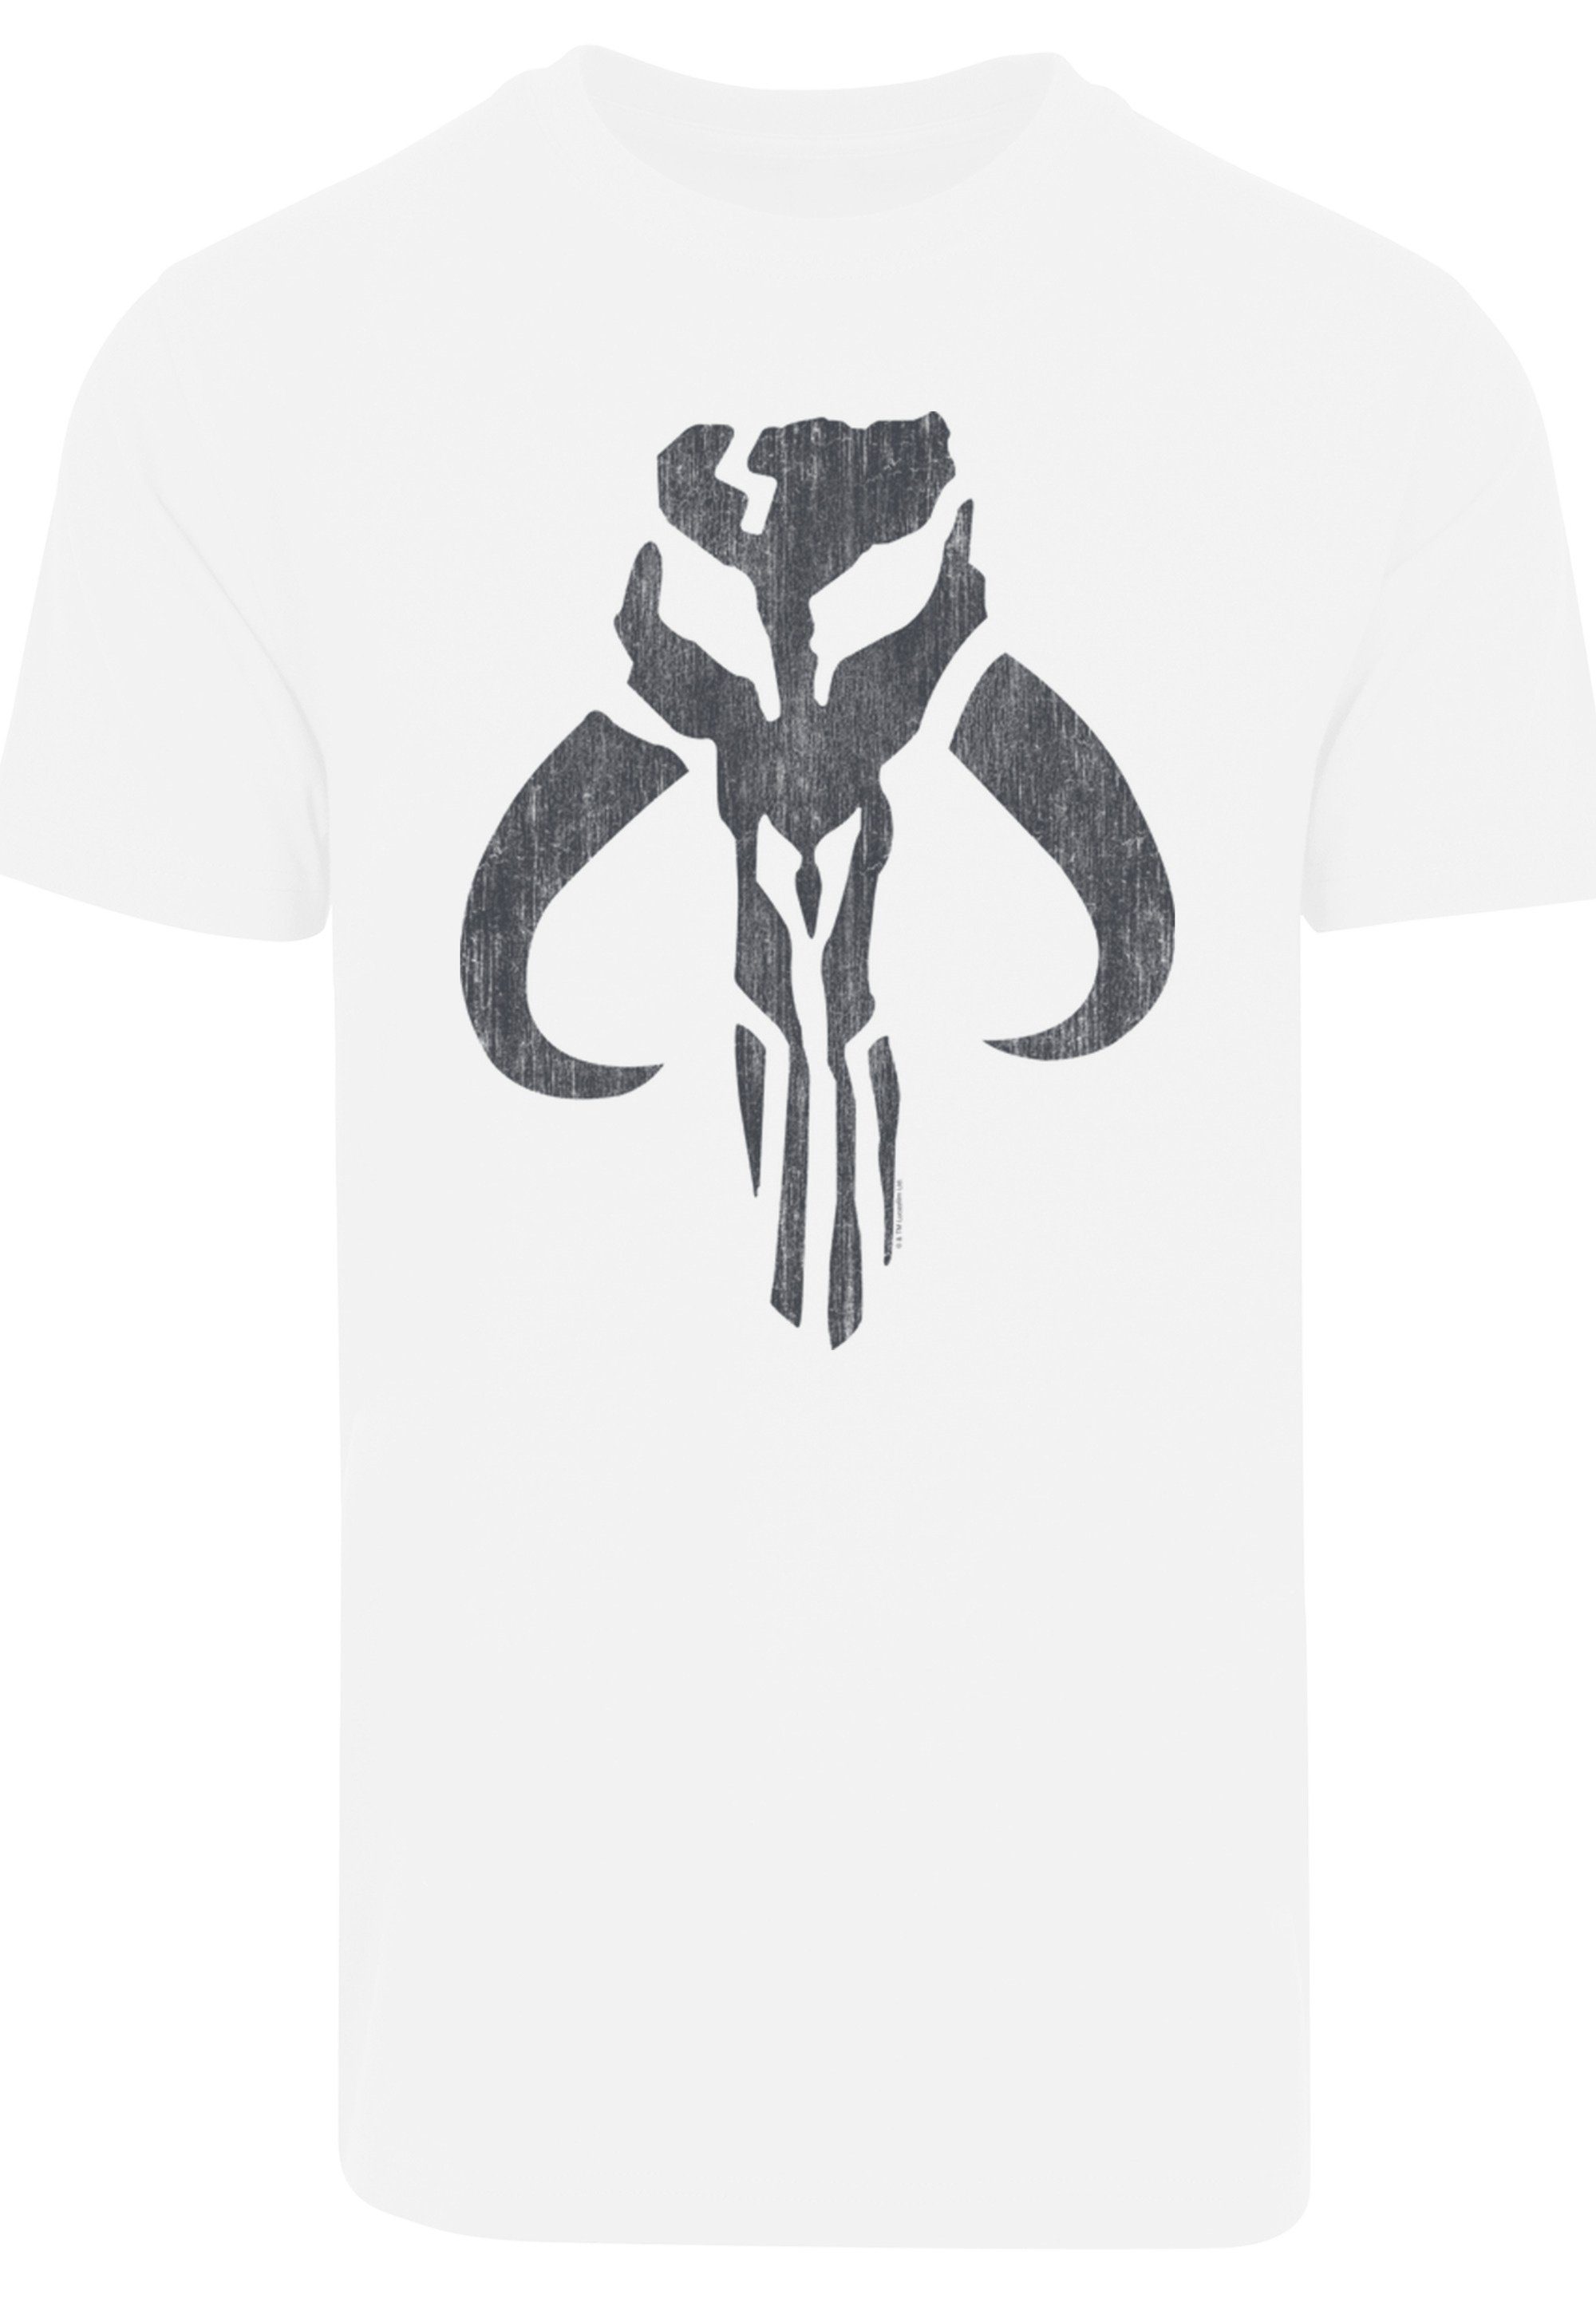 F4NT4STIC T-Shirt Star Wars Mandalorian Skull Print weiß Banther